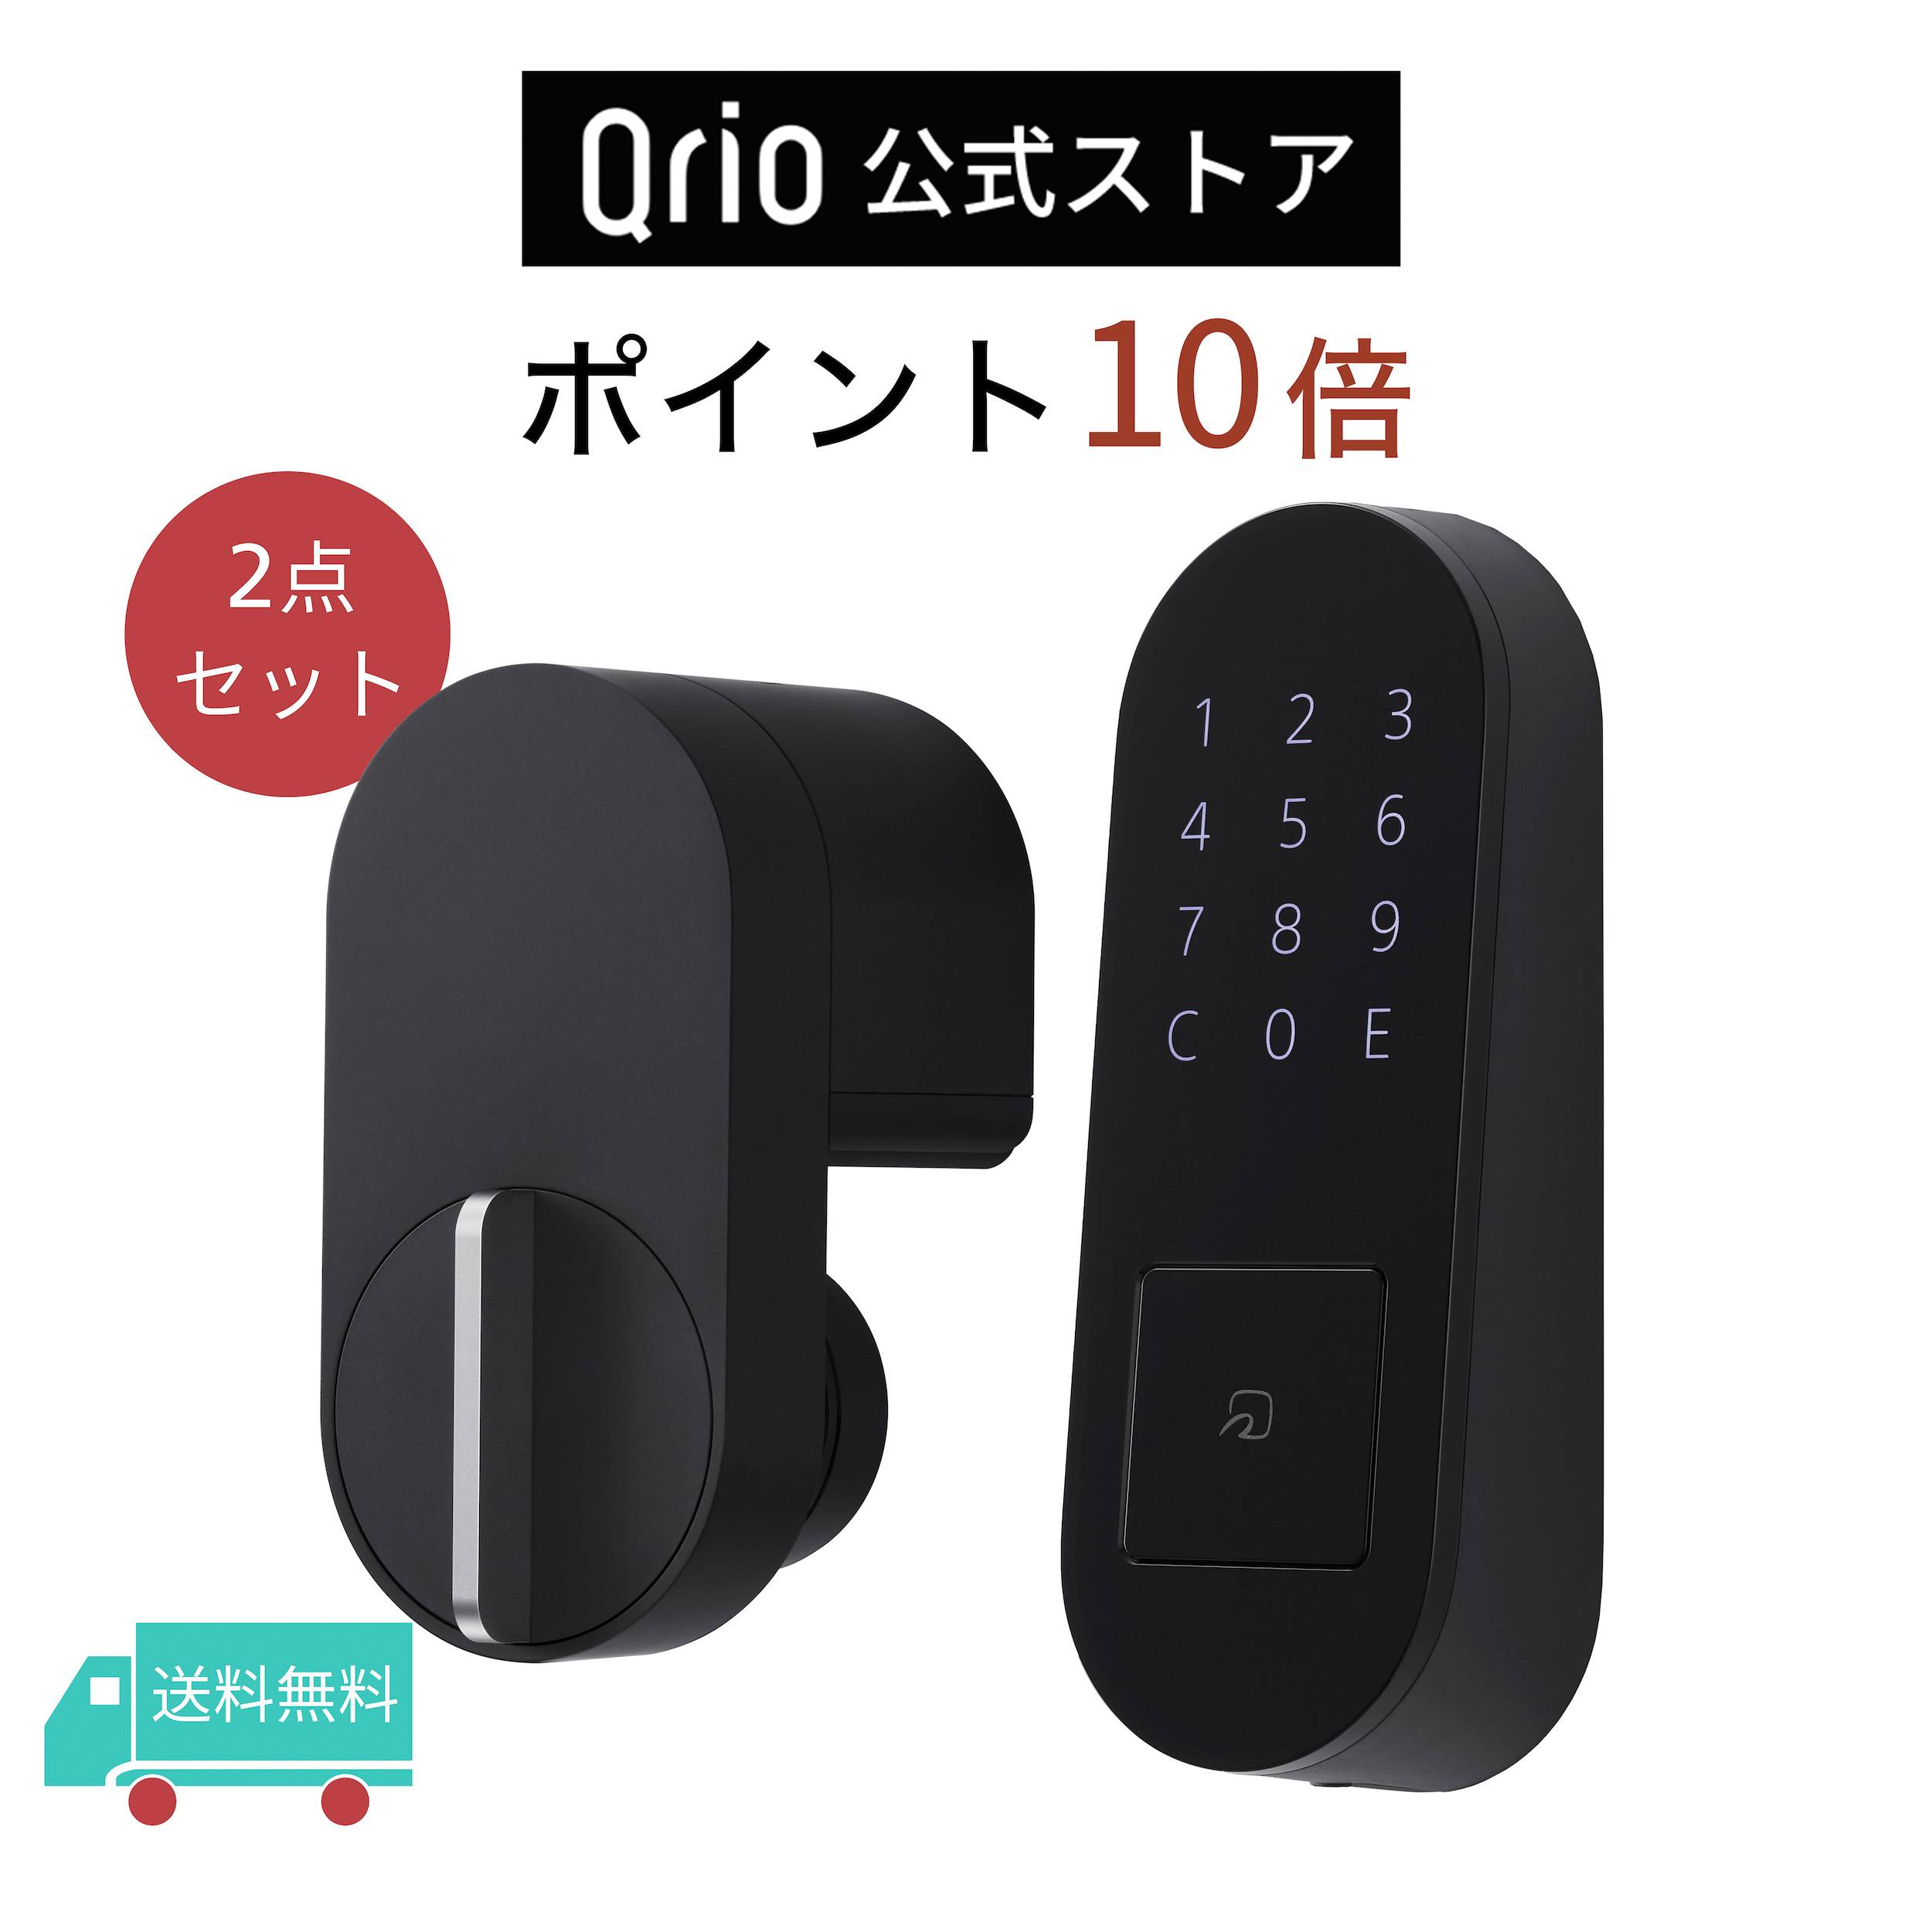 特別セール品 Qrio Lock キュリオロック 2台セット sushitai.com.mx